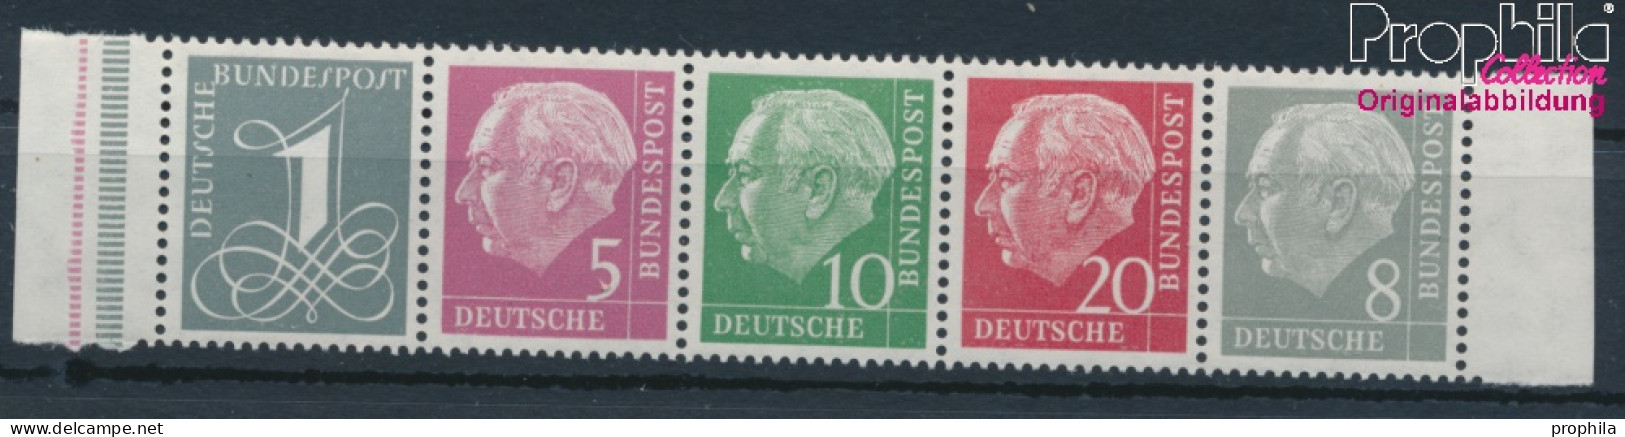 BRD 179Y,182Y,183Y,185Y,285Y (kompl.Ausg.) Liegendes Wasserzeichen Postfrisch 1960 Heuss I (10347828 - Unused Stamps